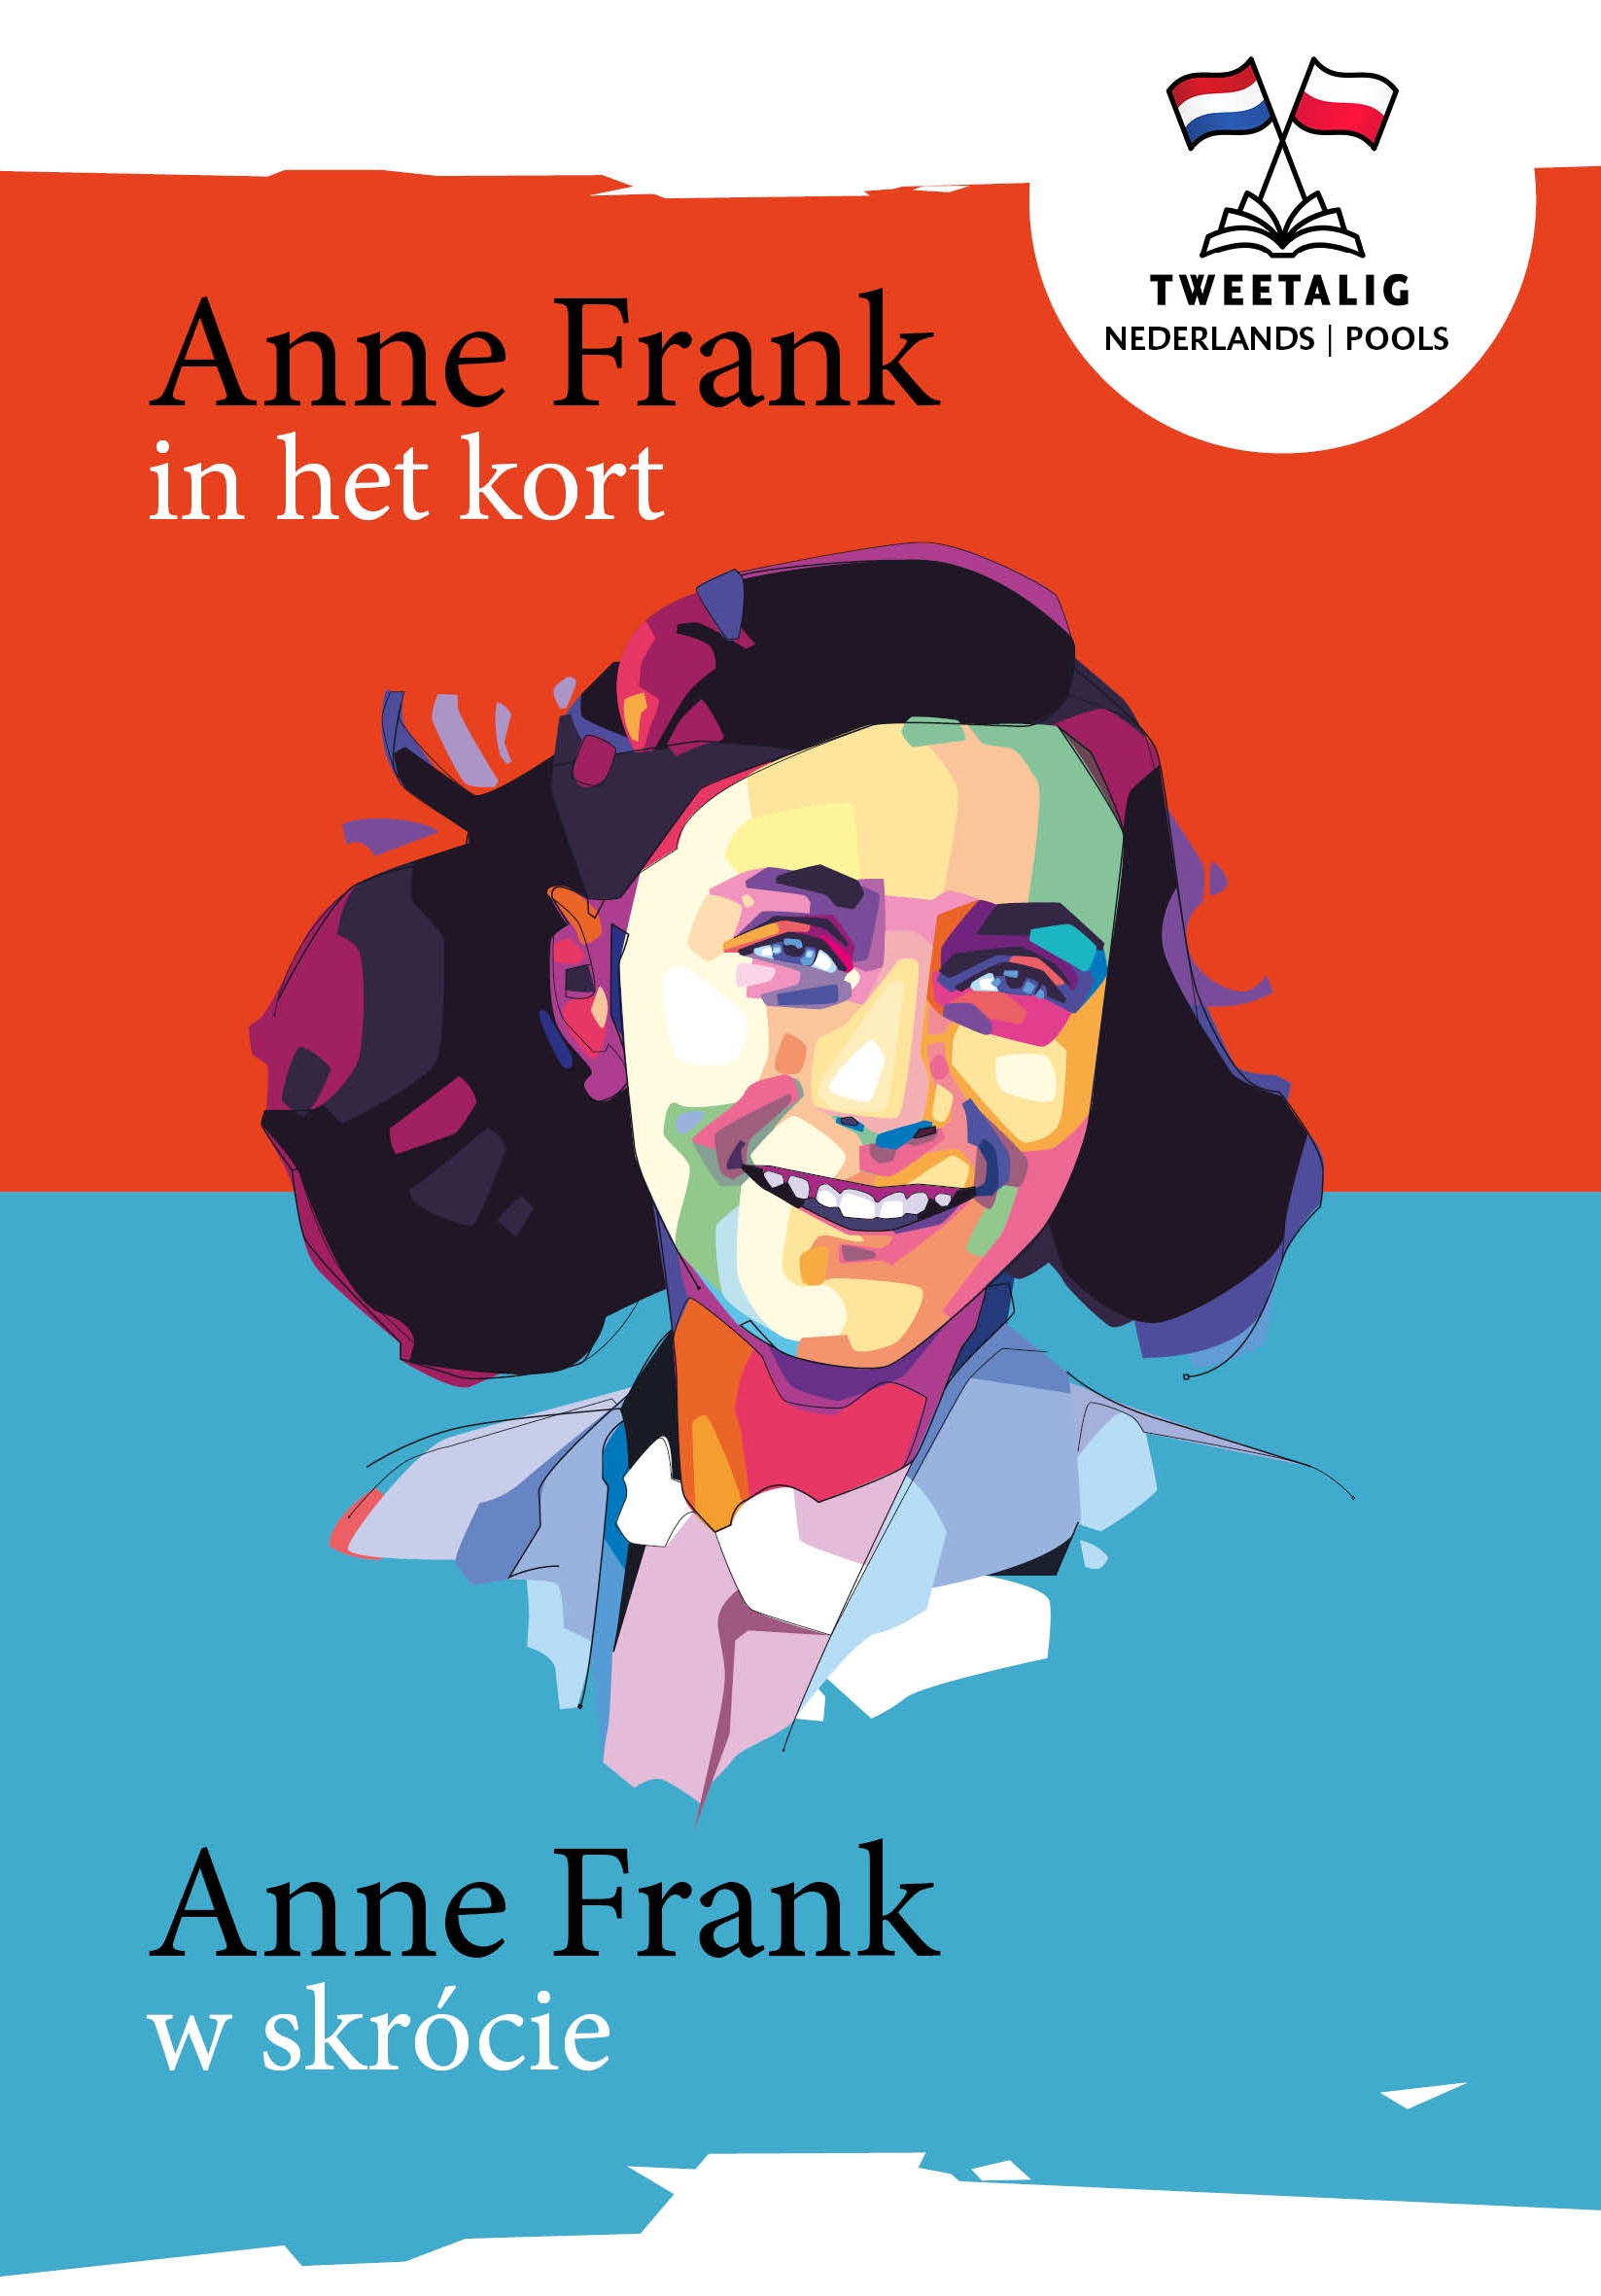 Anne Frank Nederlands Pools